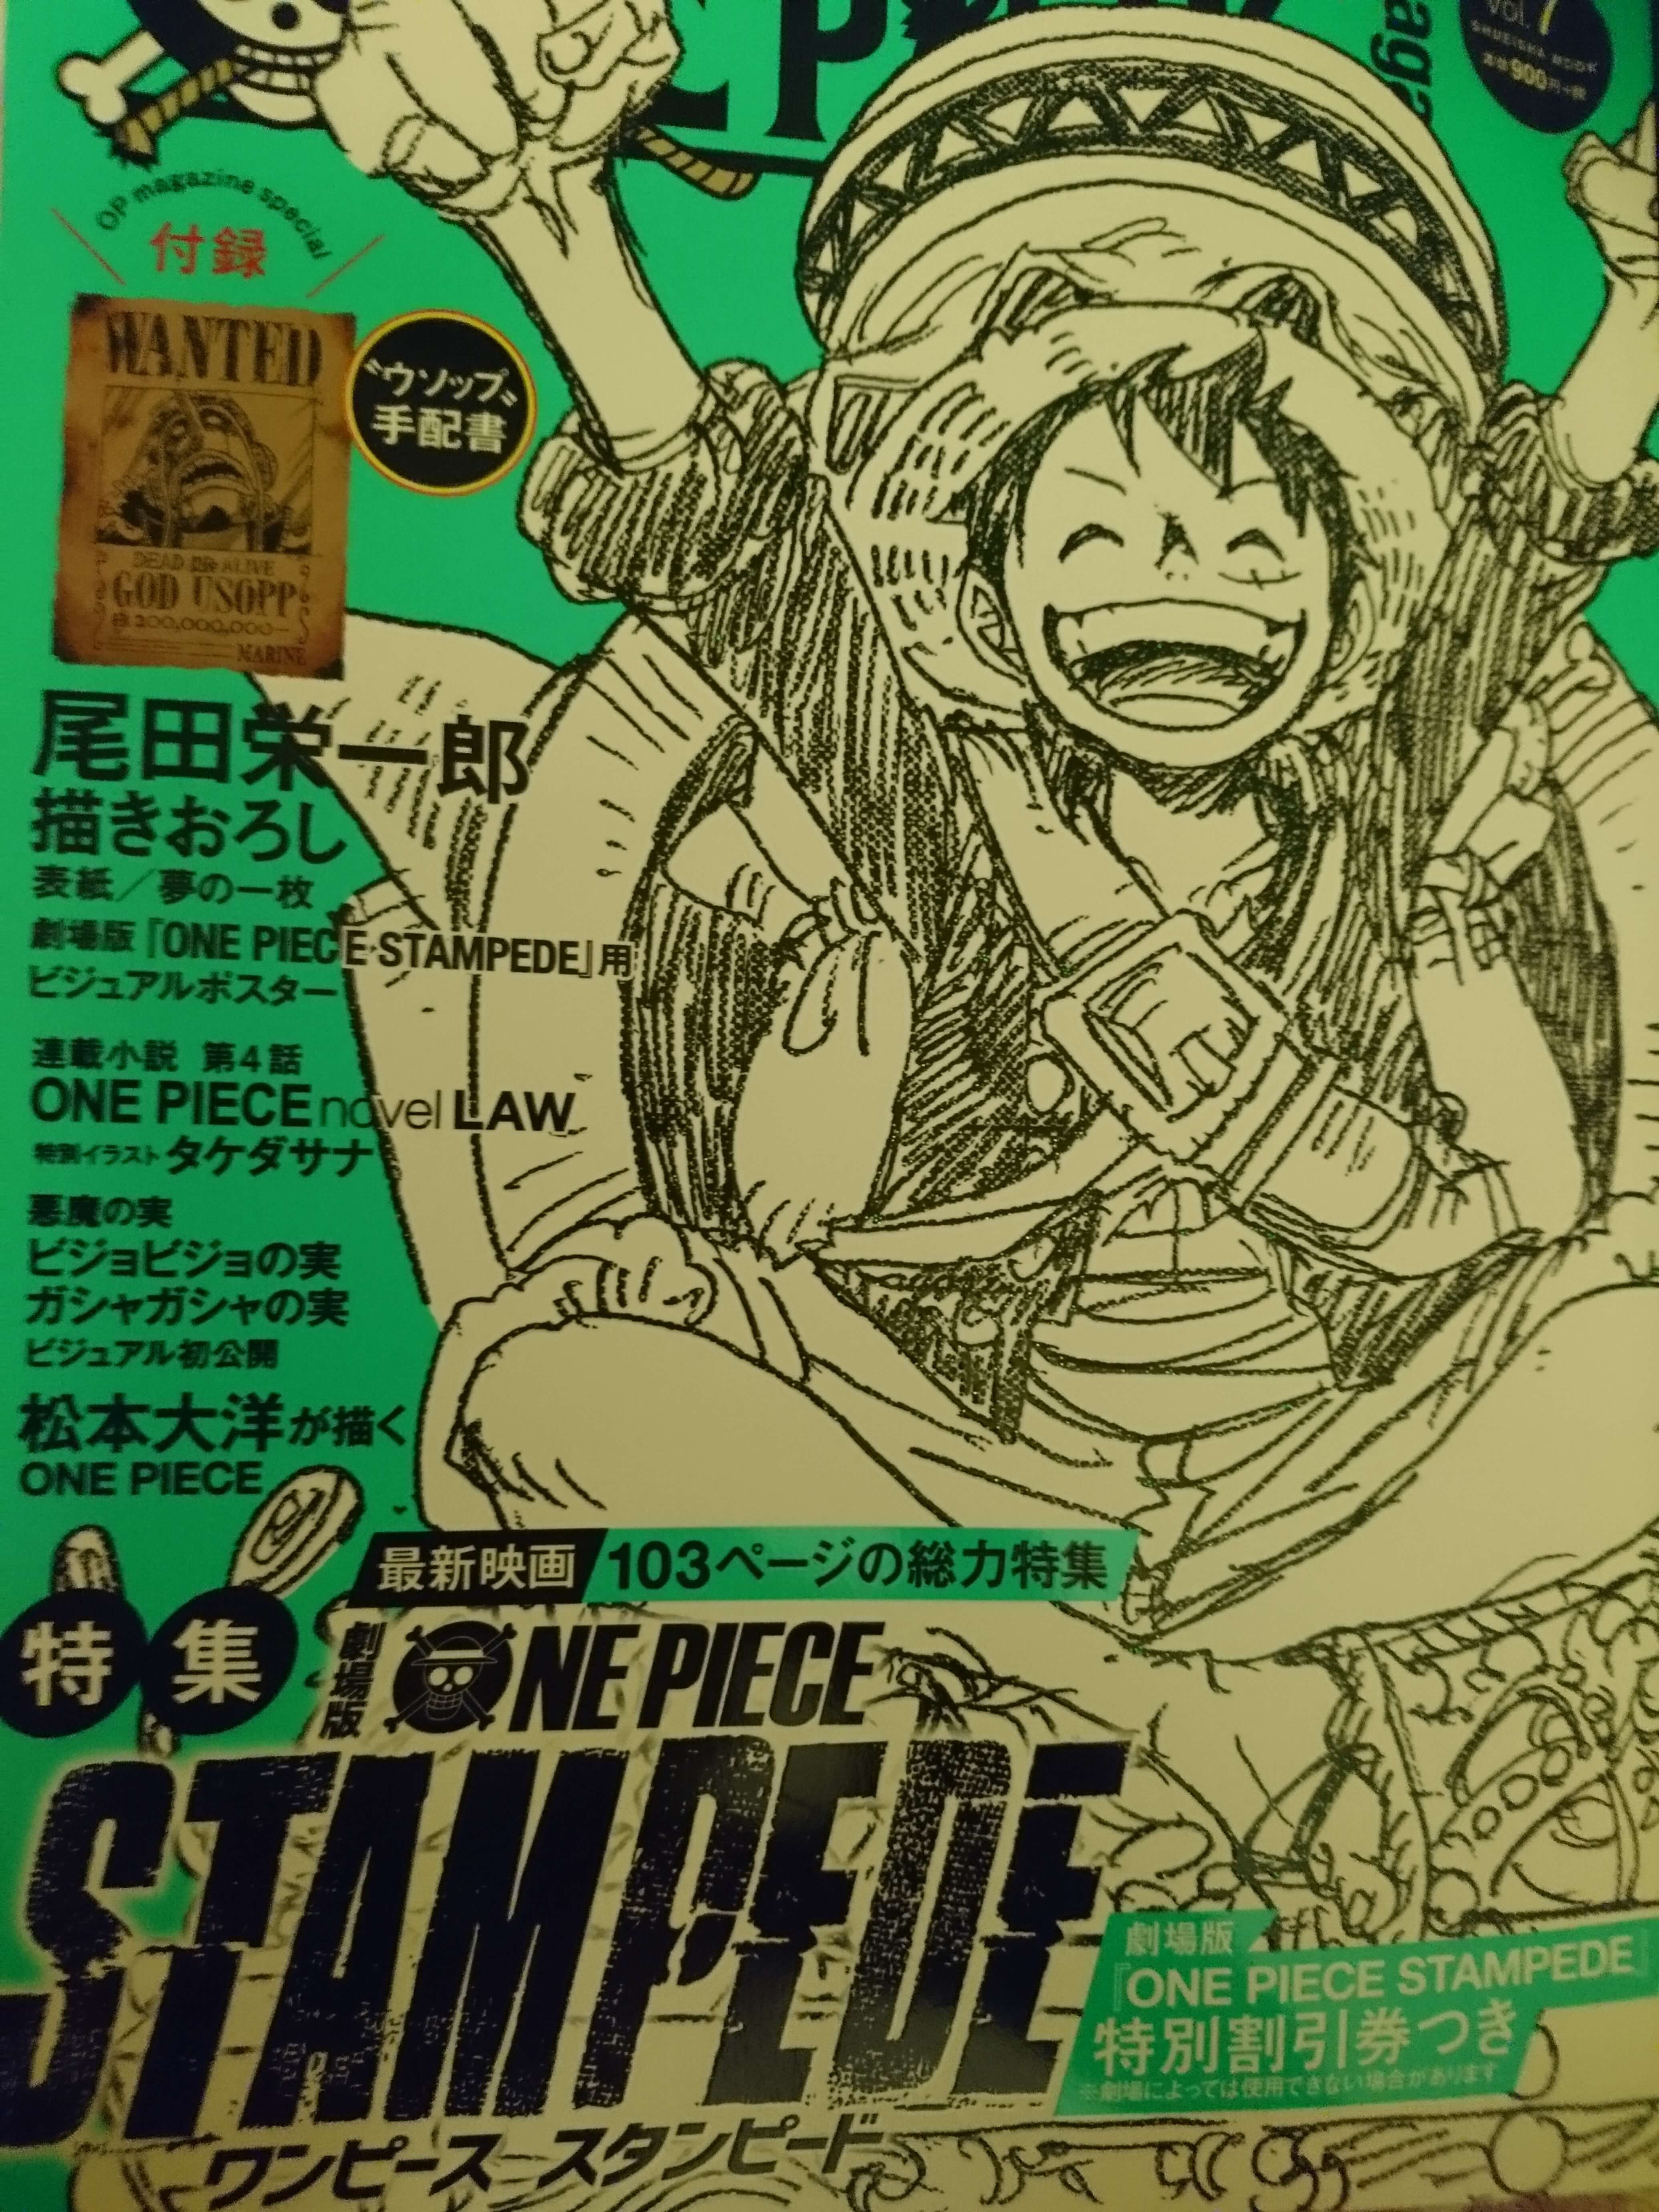 ワンピースマガジン第７弾 One Piece Magazine Vol 7 感想 考察 映画 スタンピード 特集 夢の１枚 はクロコダイル ドフラミンゴのオシャレ番長 ローの小説堂々完結